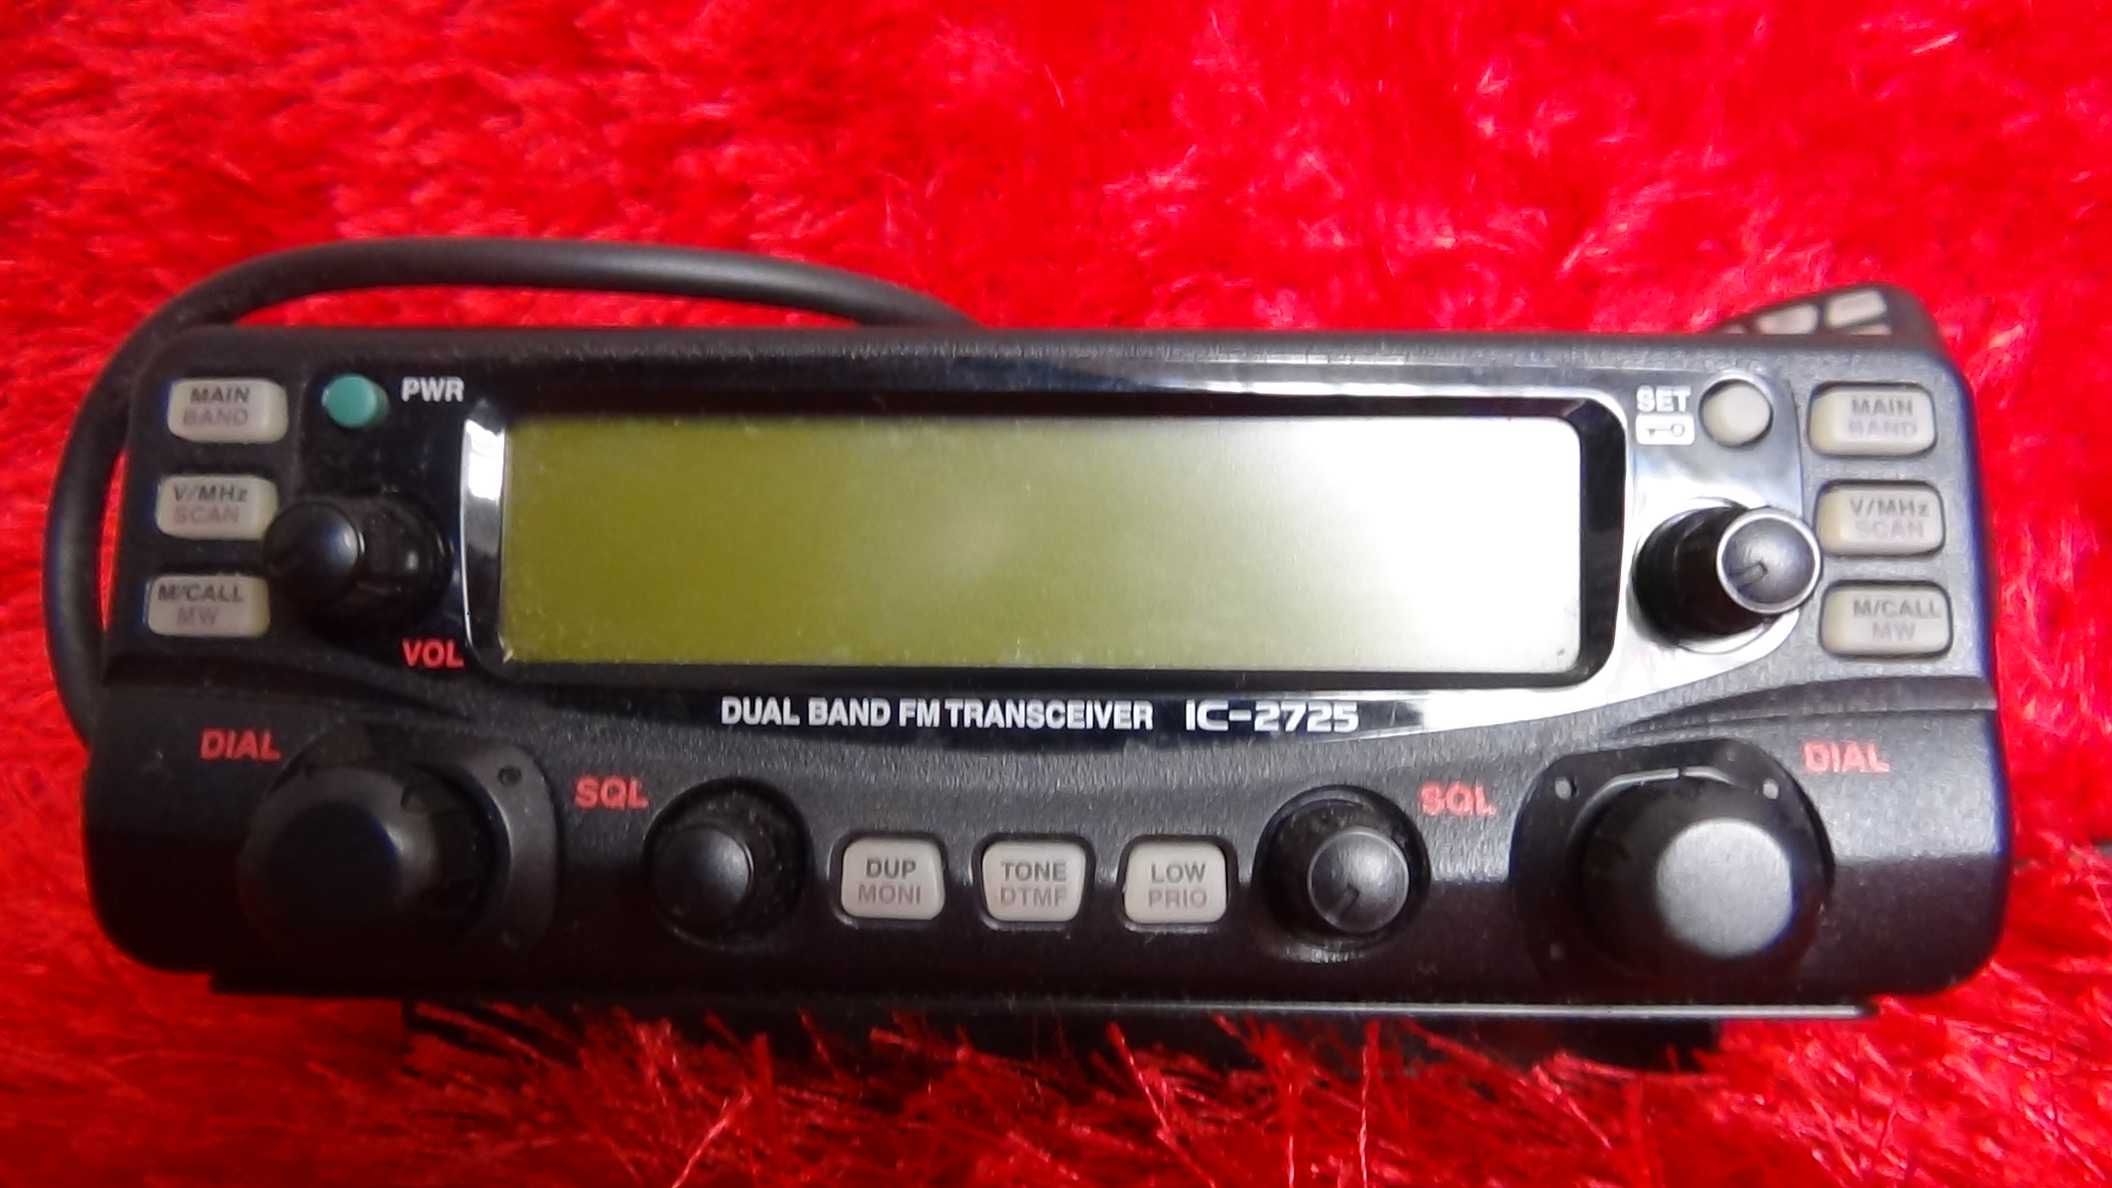 1 – Icom Dual Band FM Transceiver, IC-2725E